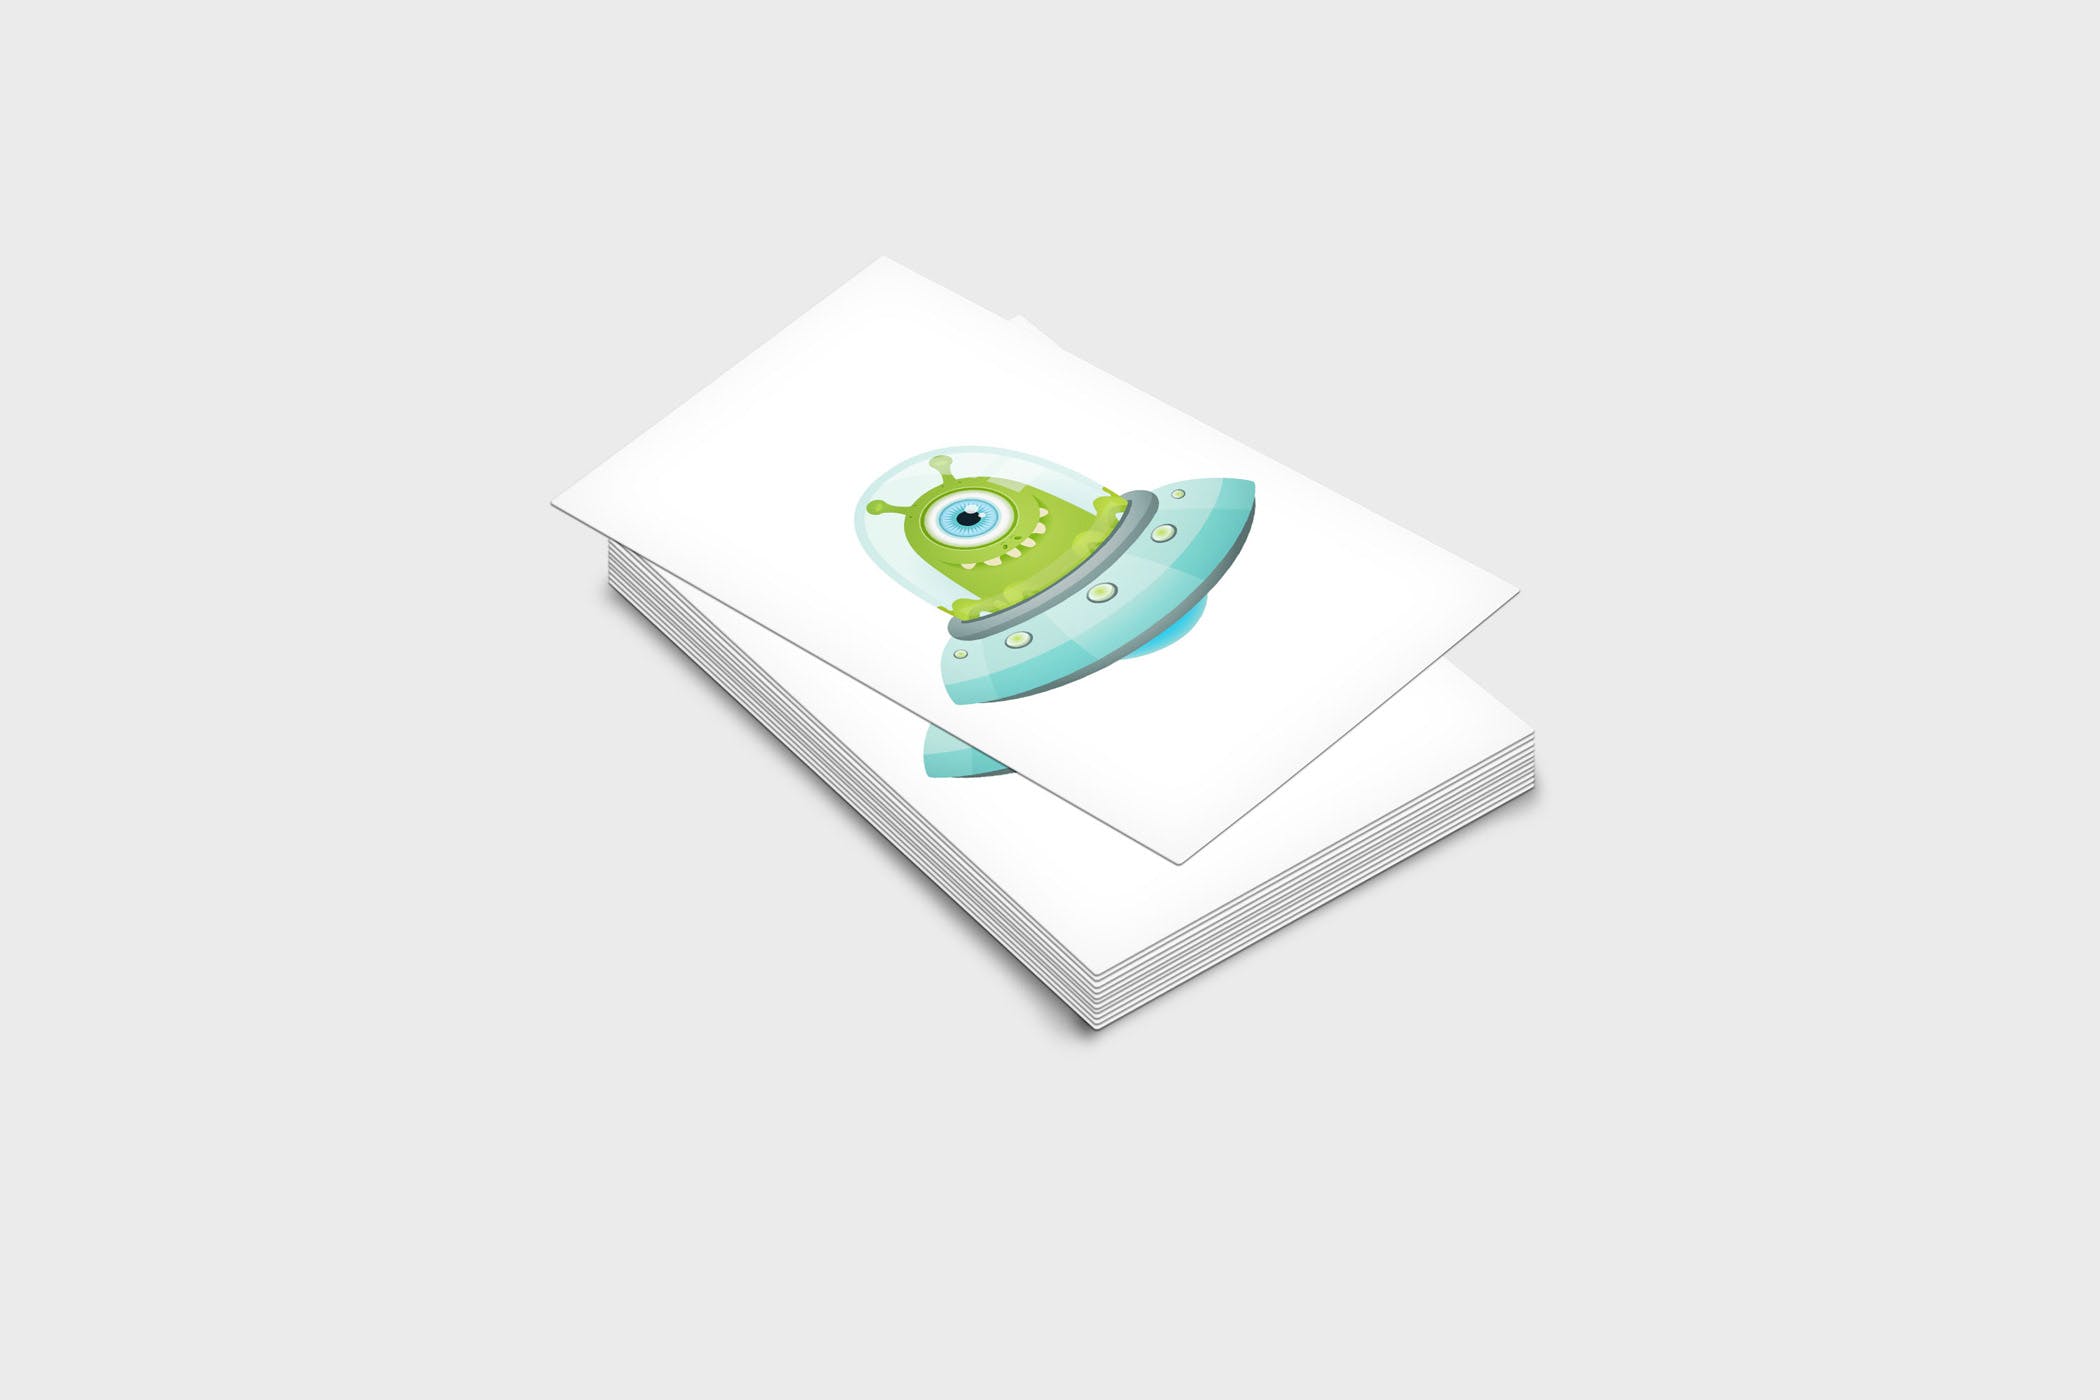 企业名片设计效果图展示样机蚂蚁素材精选模板 4 Business Card Mock-Up Template插图(1)